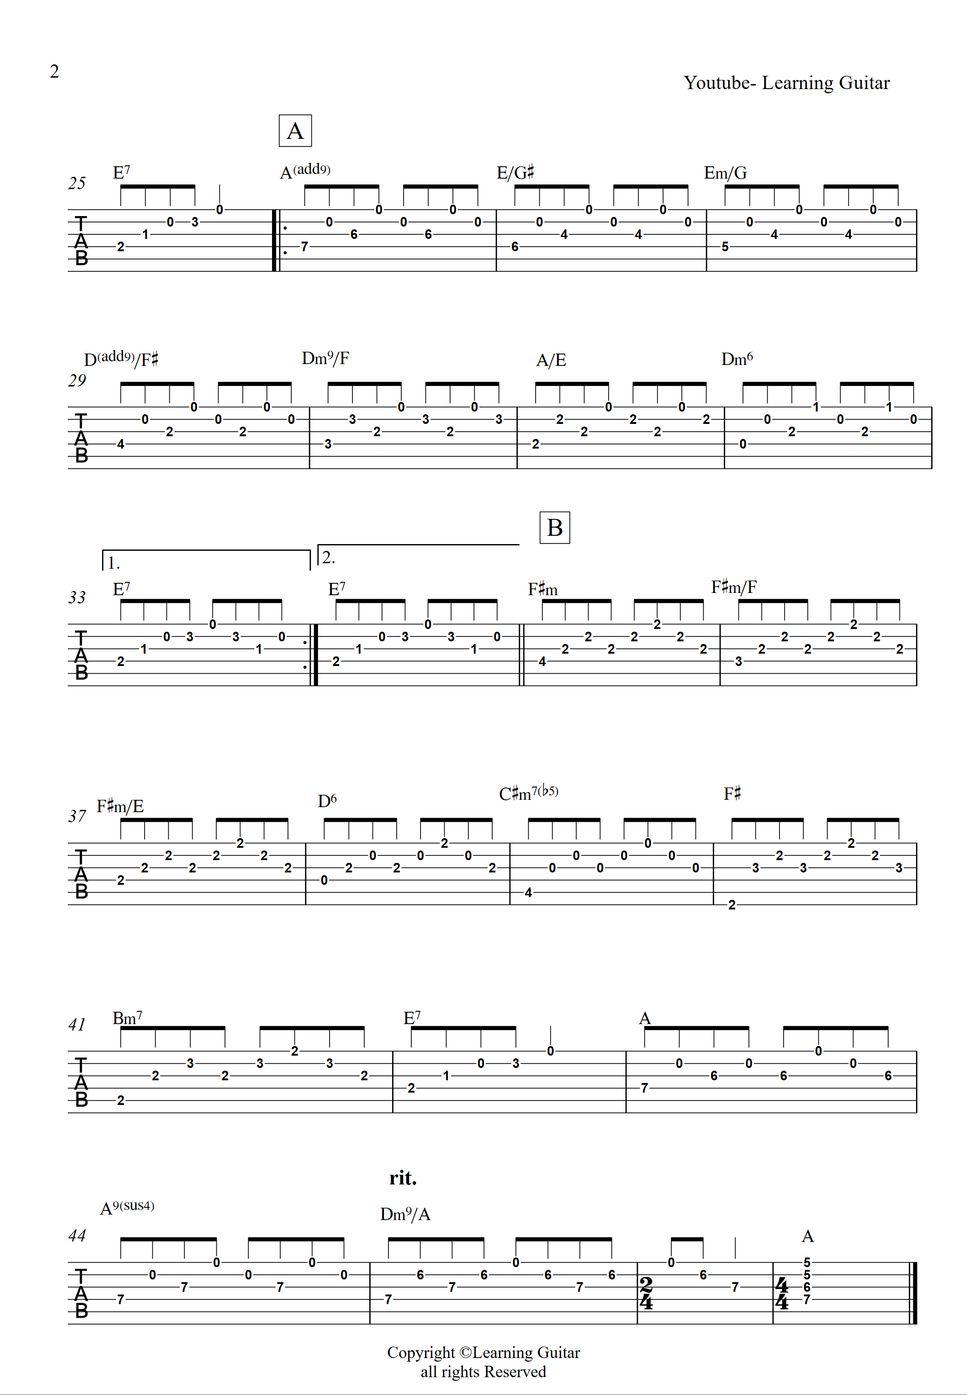 Bread - IF (Rhythm Guitar) (Rhythm guitar TAB) by Learning Guitar